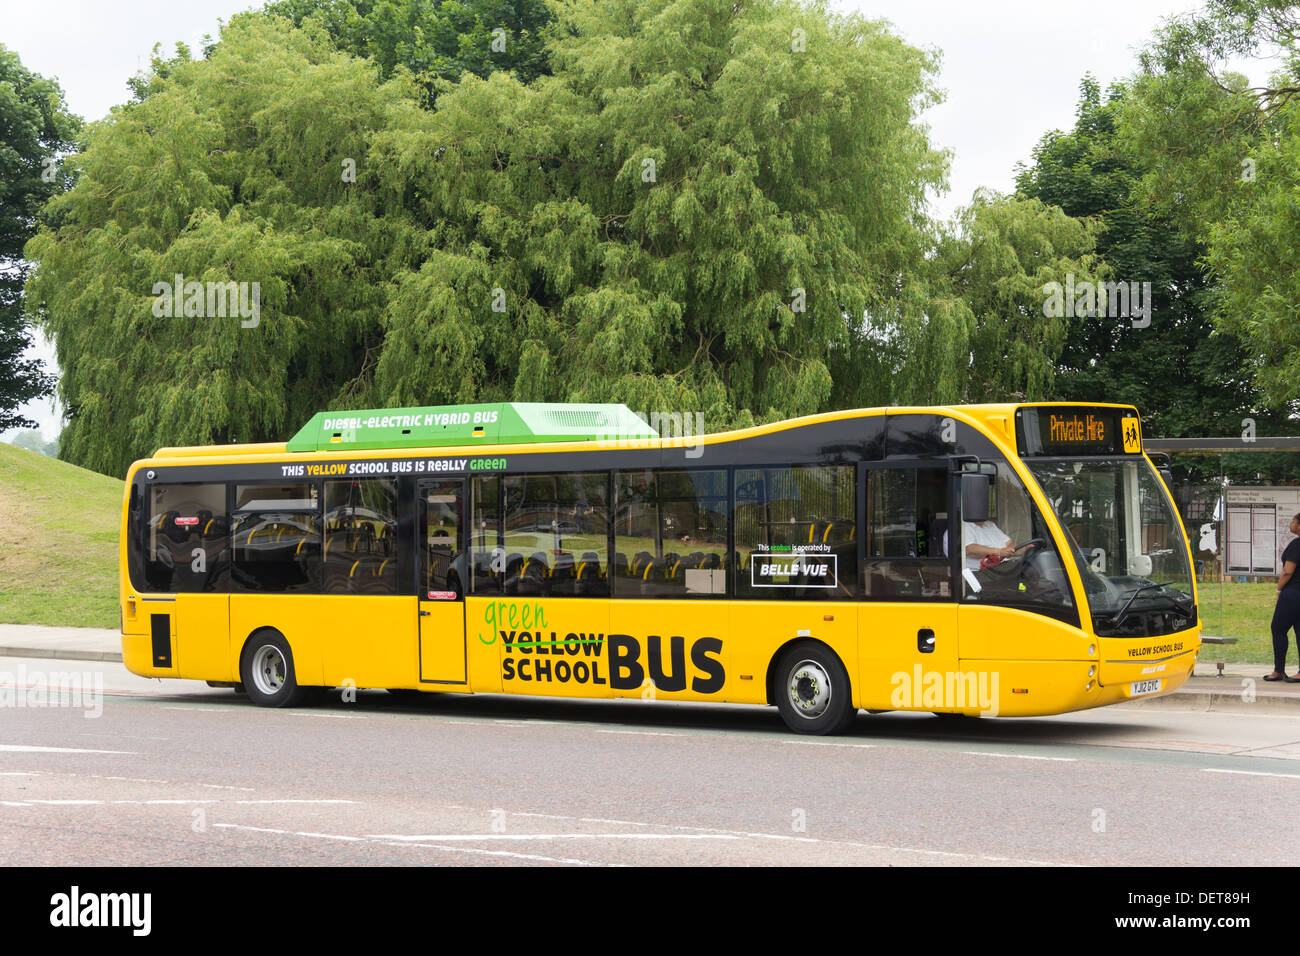 Un autobús escolar amarillo (UK variedad) de Manchester. El vehículo es un híbrido diesel Optare Versa baja/emisión de vehículos eléctricos. Foto de stock